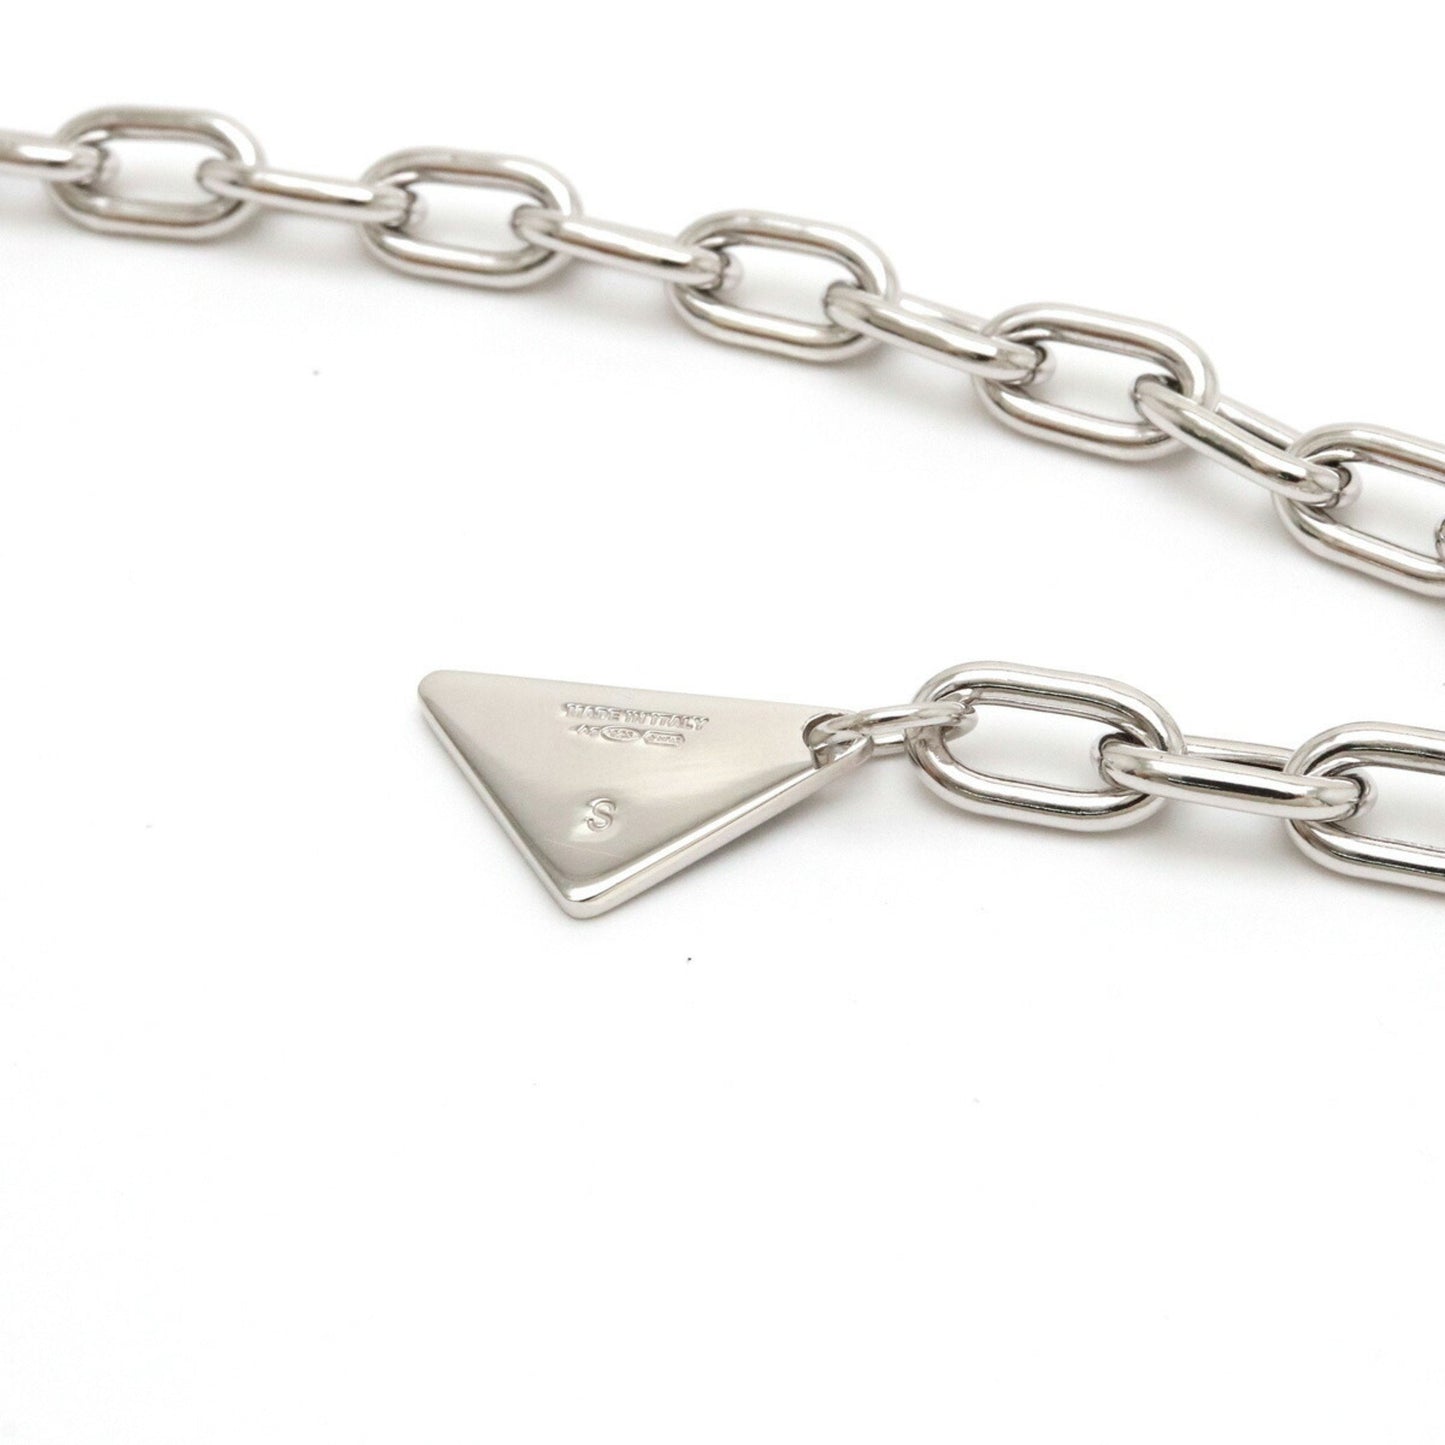 Prada Women's Luxury Silver Triangle Logo Charm Bracelet - Prada in Silver